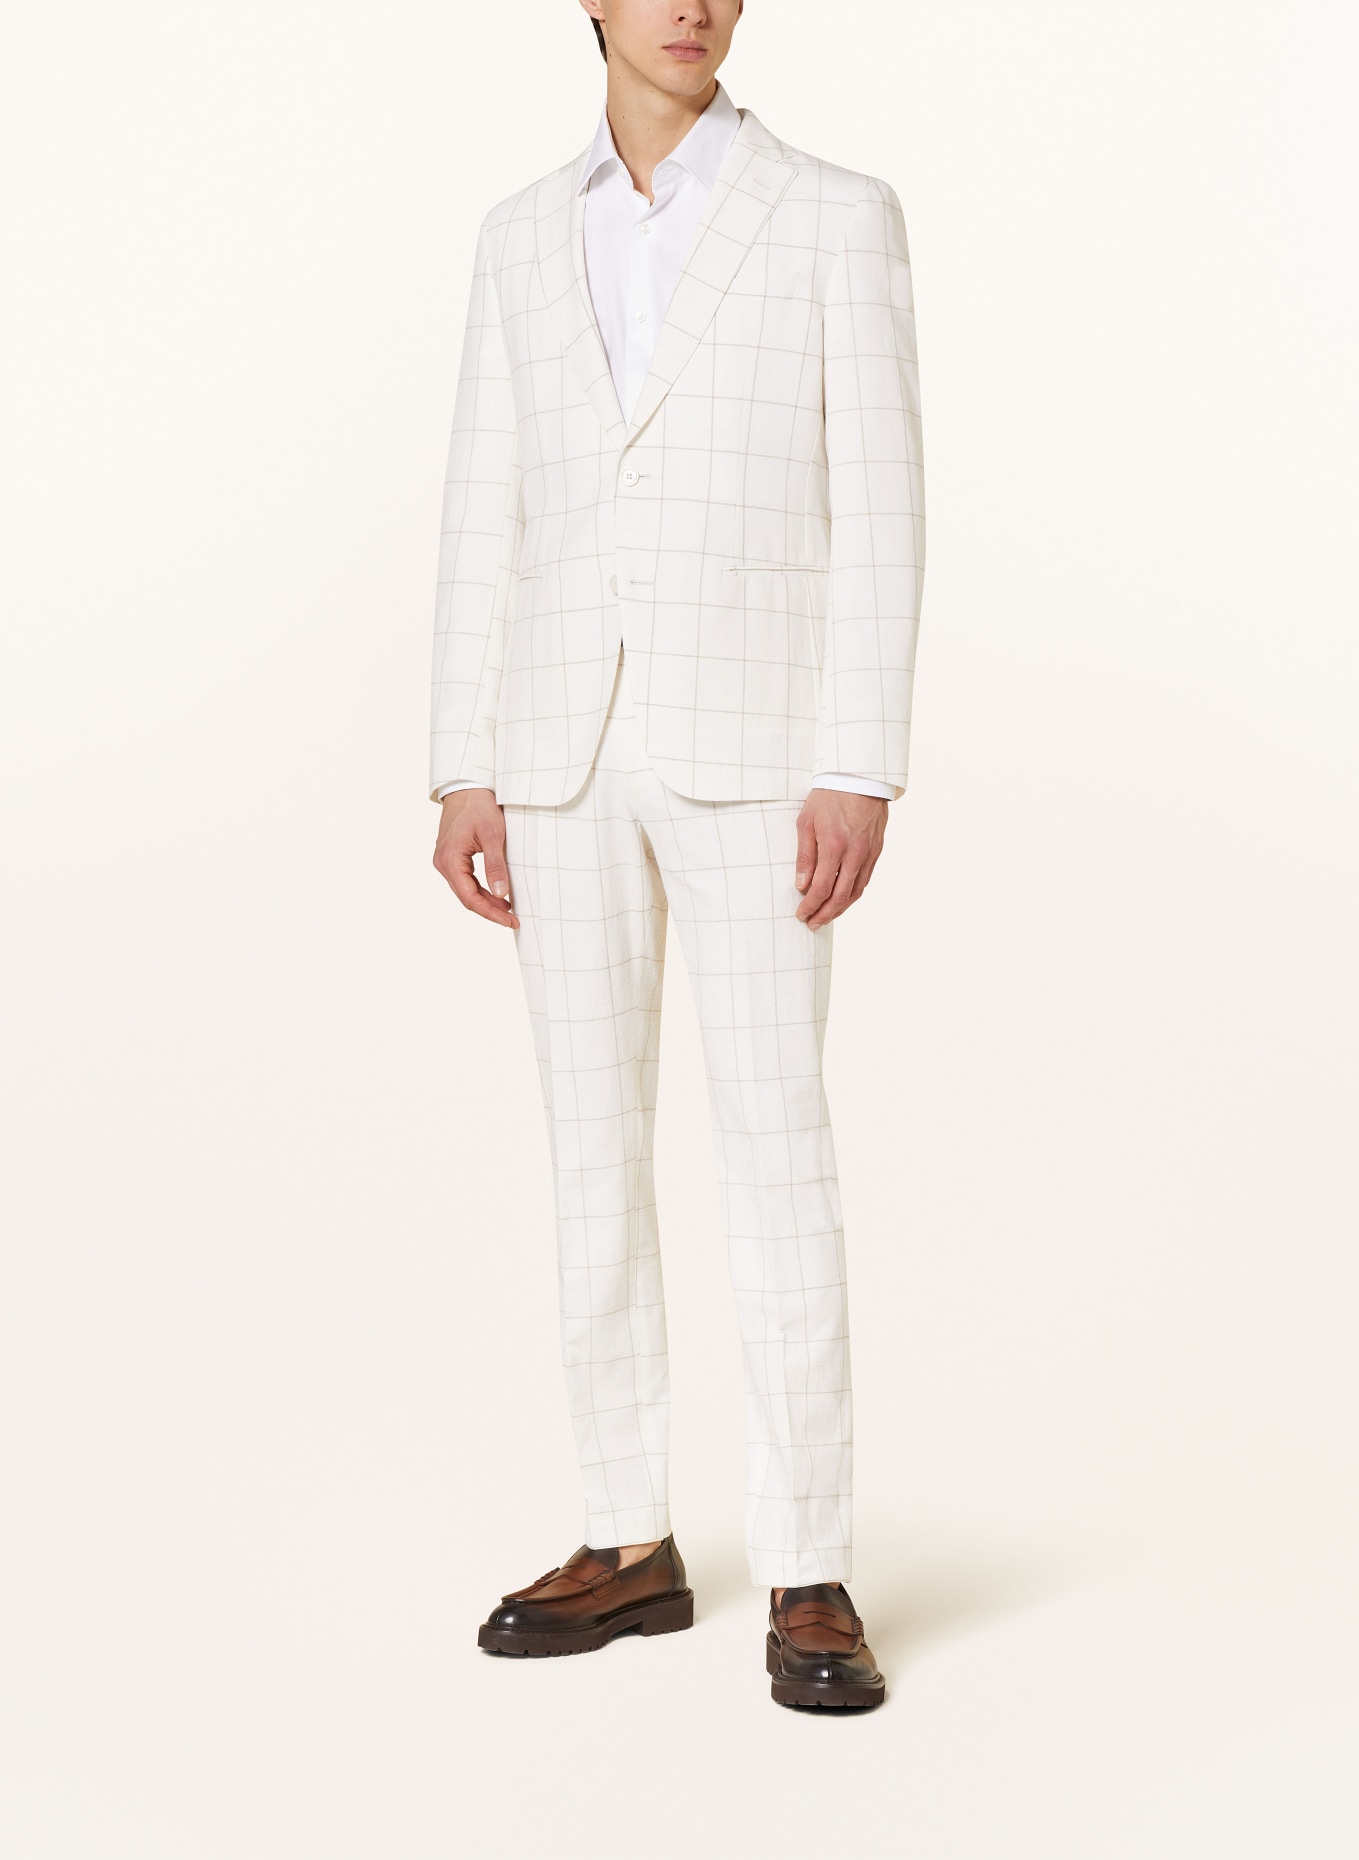 BOSS Anzugsakko HUGE Slim Fit, Farbe: 100 WHITE (Bild 2)